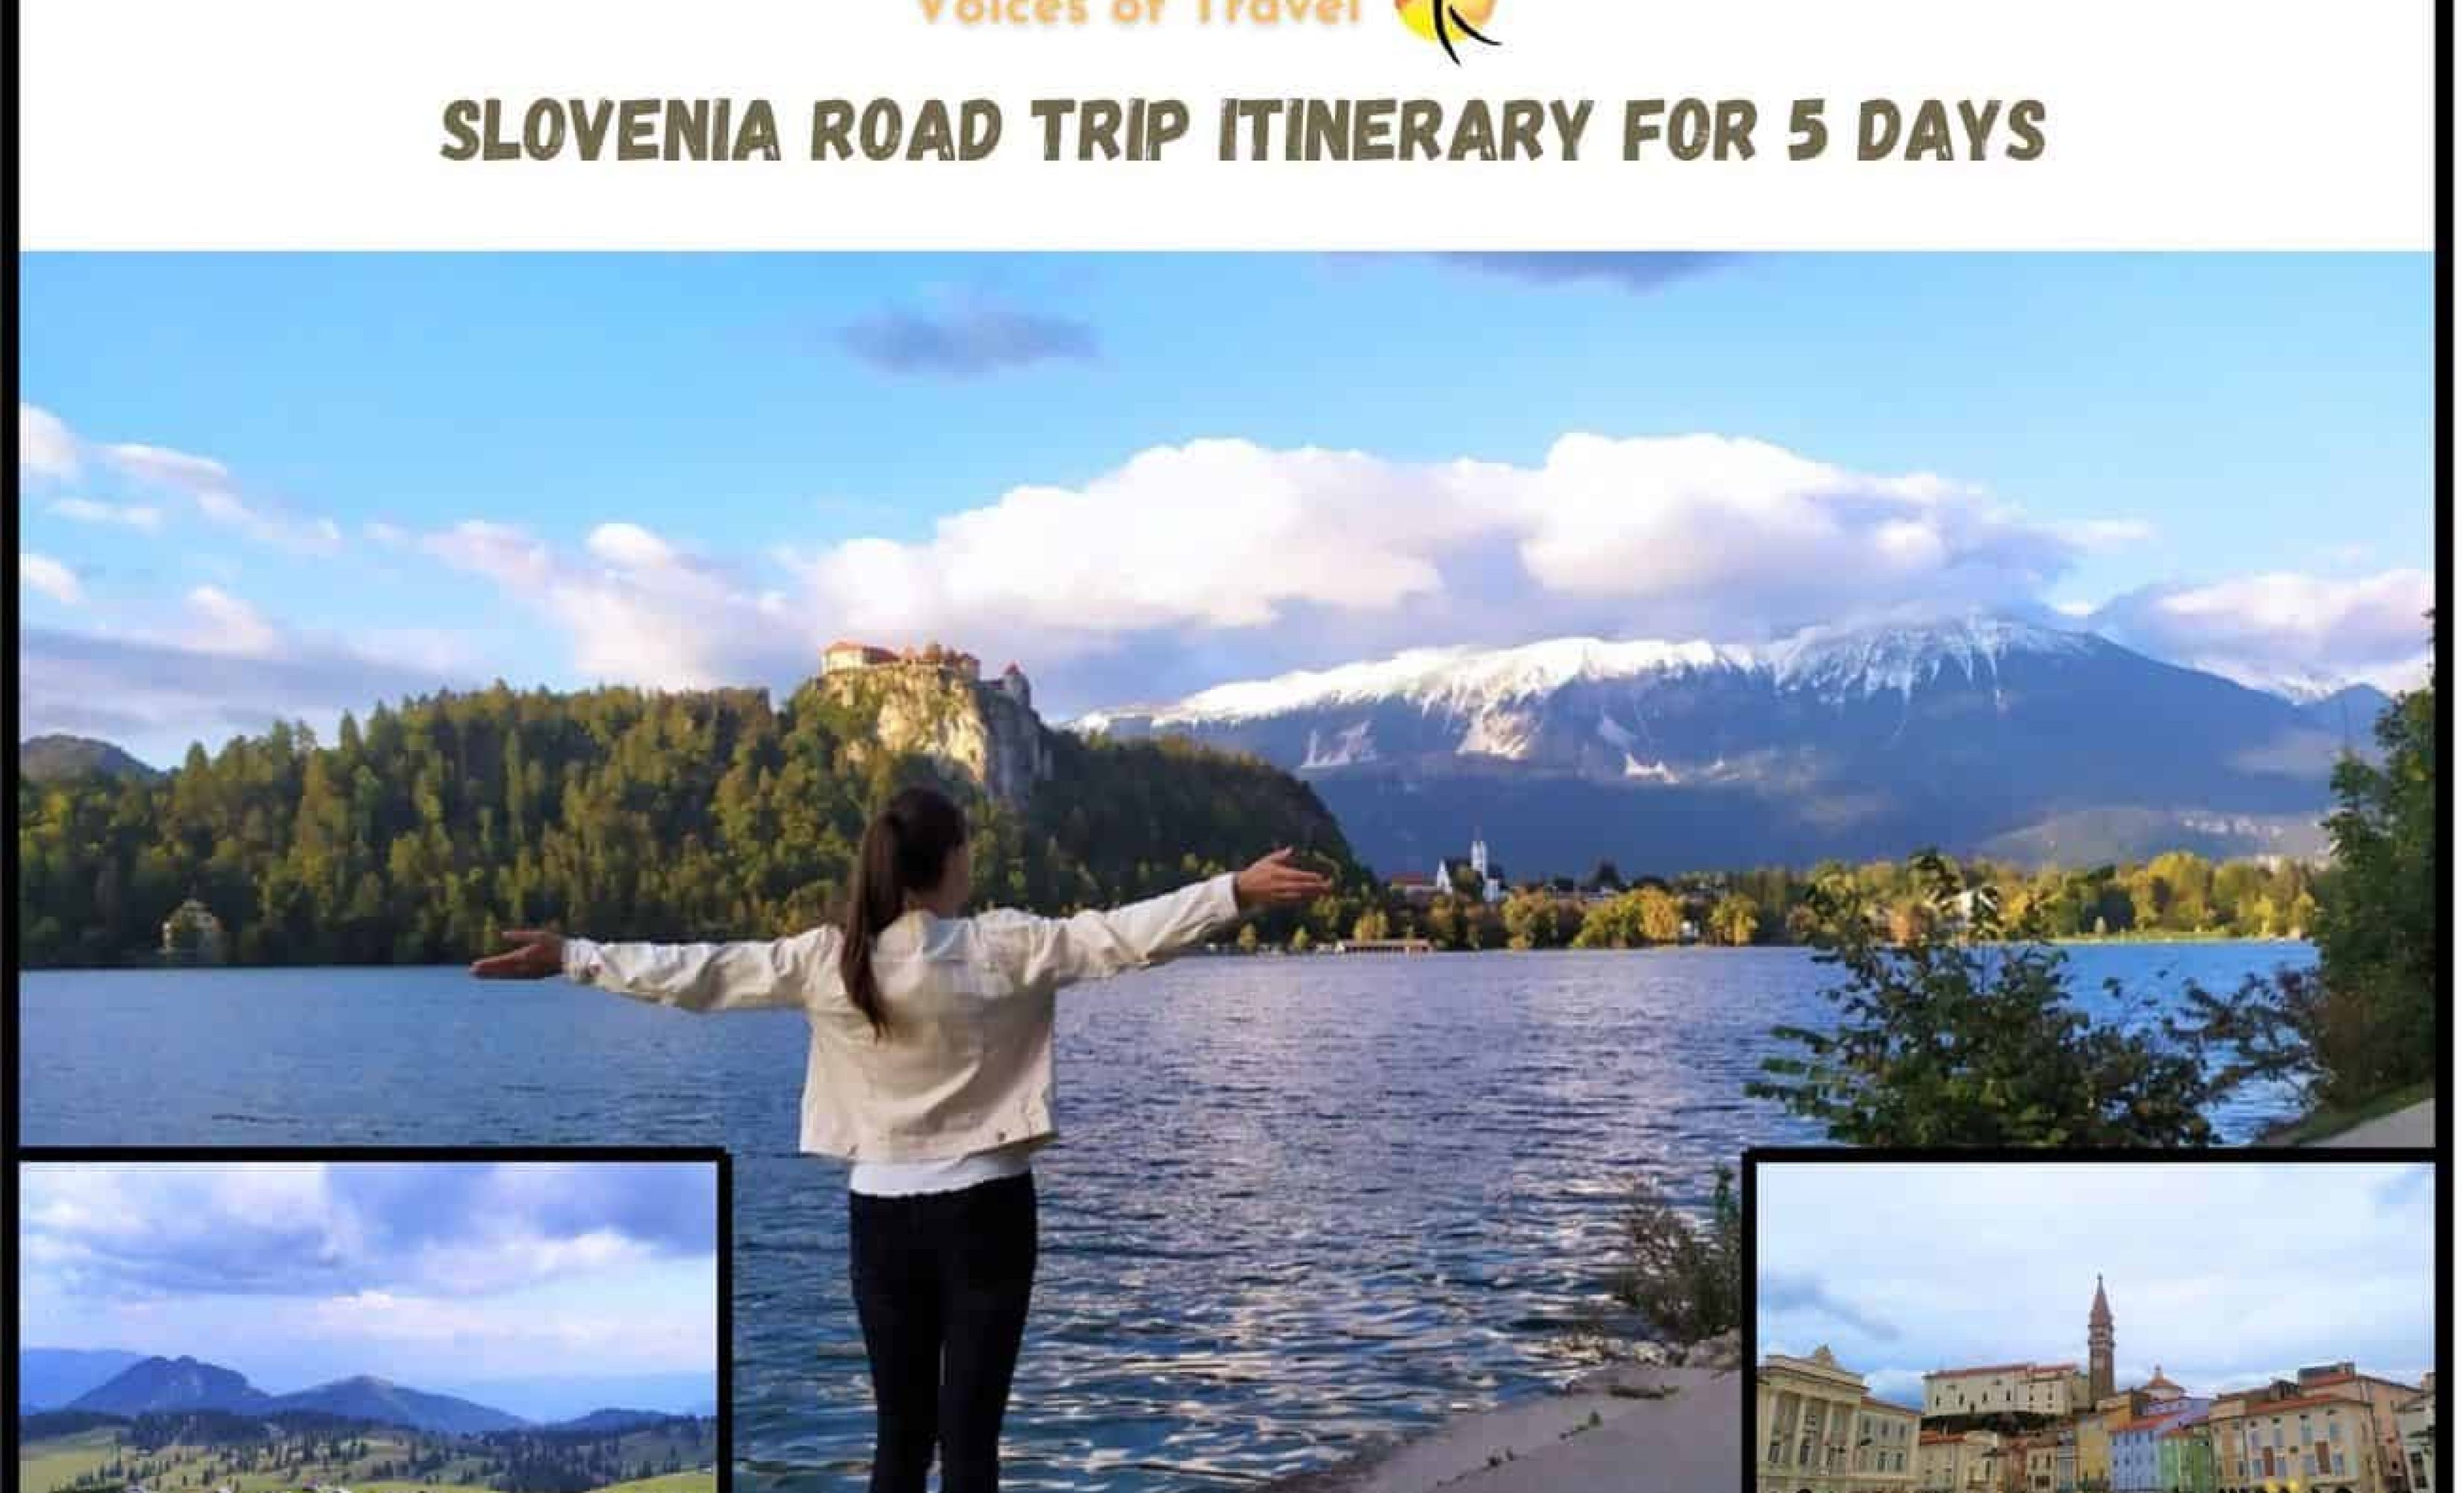 Slovenia road trip itinerary 5 days